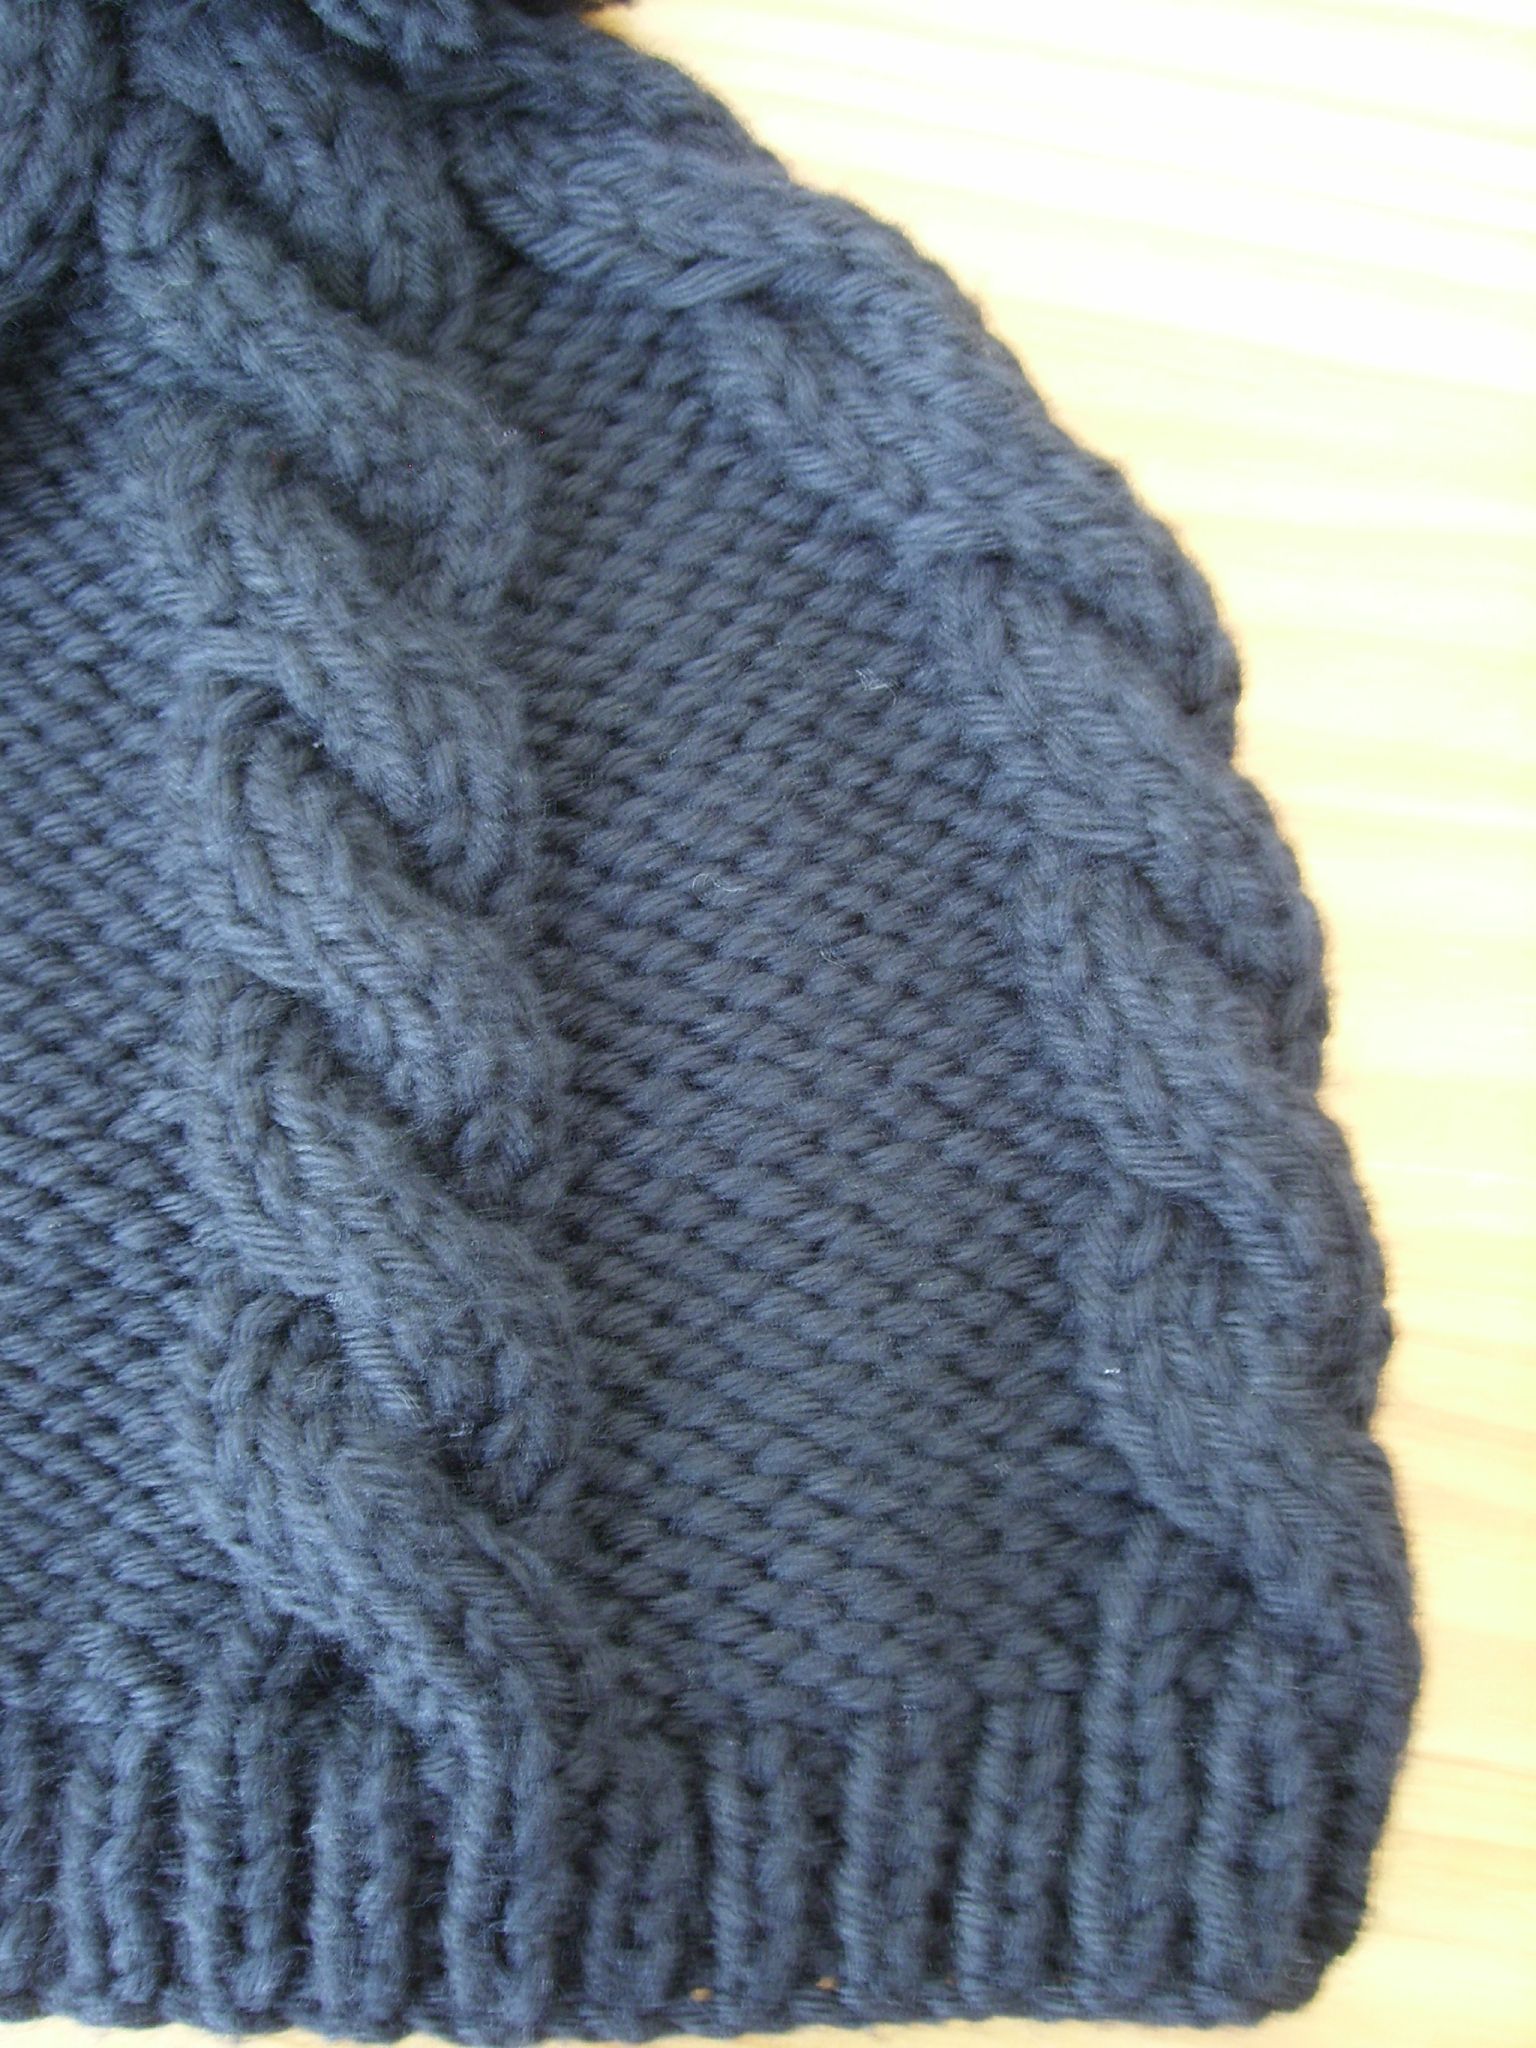 tricoter un bonnet irlandais